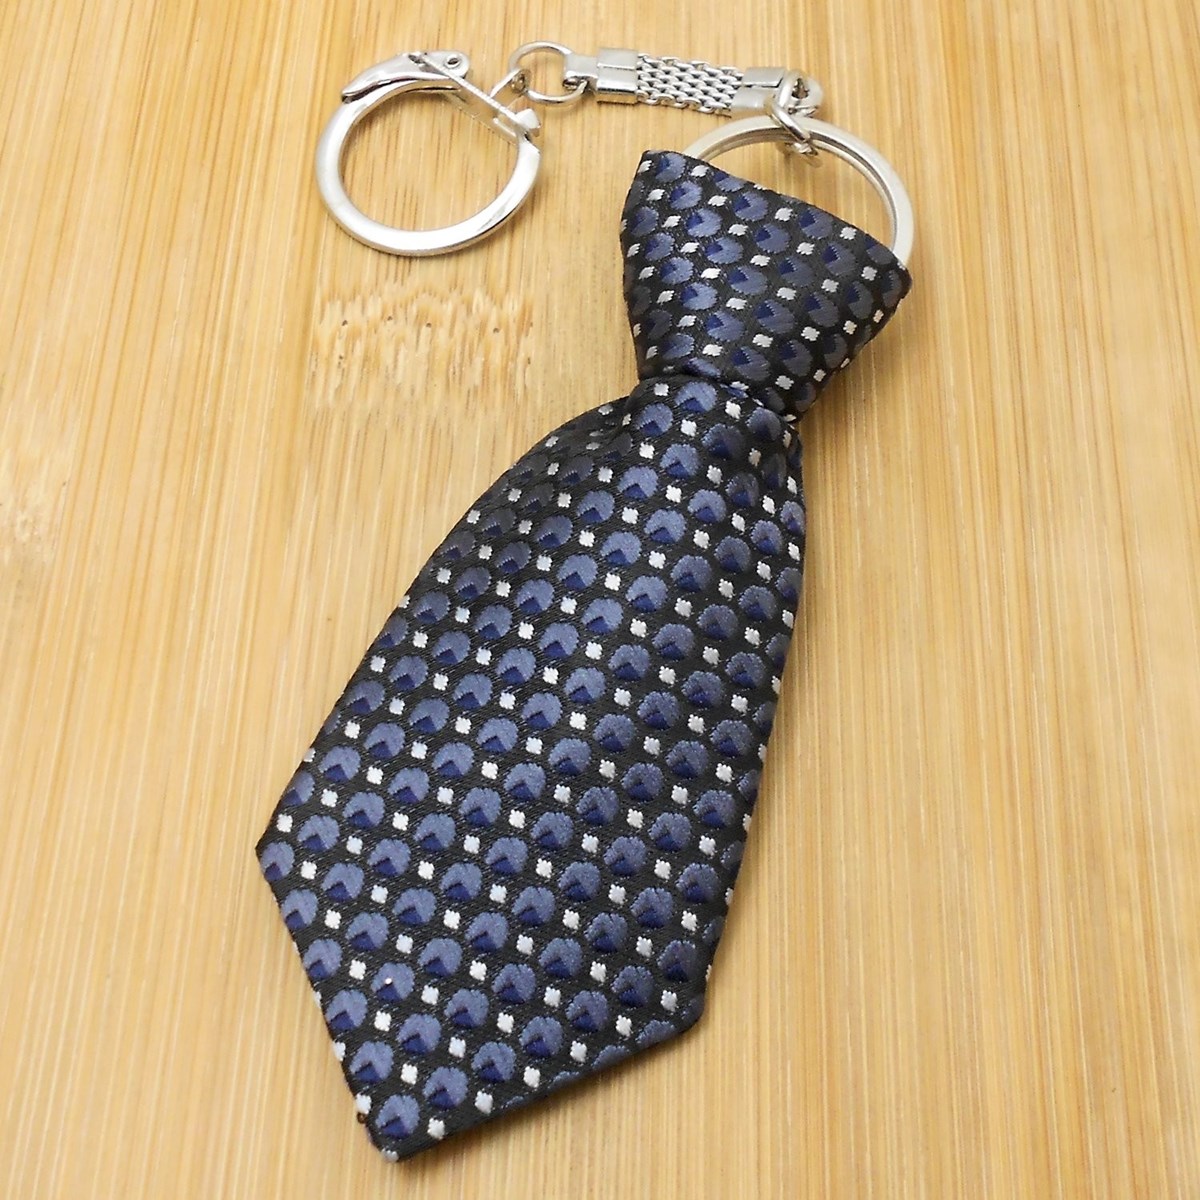 Porte-clés cravate en tissu motif blanc et bleu sur fond noir argenté - vue 2